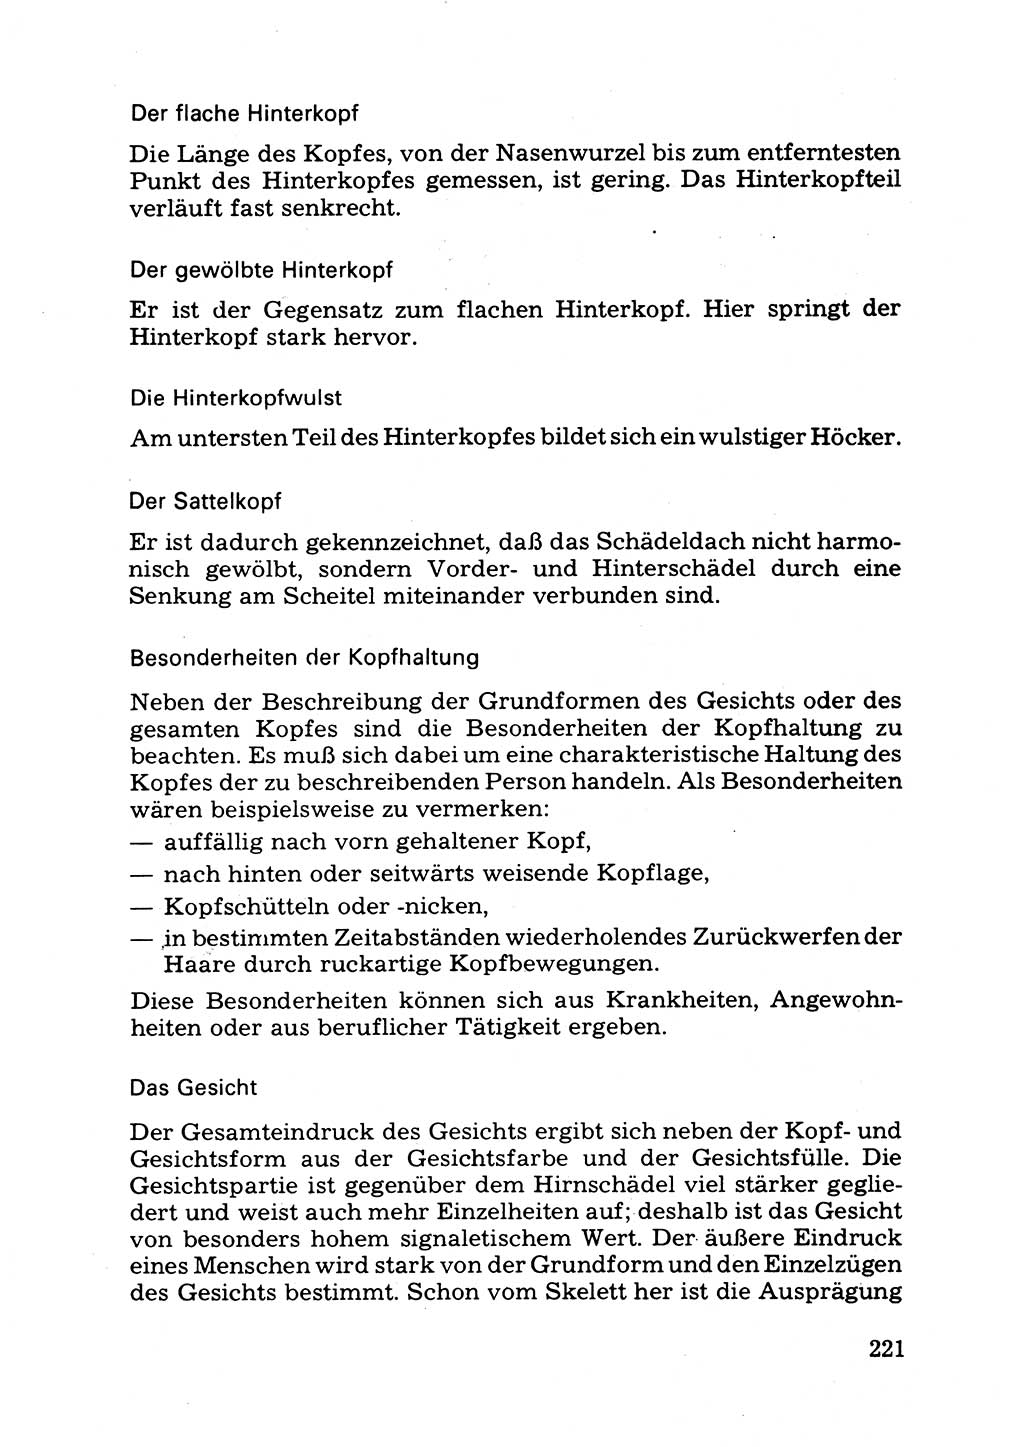 Das subjektive Porträt [Deutsche Demokratische Republik (DDR)] 1981, Seite 221 (Subj. Port. DDR 1981, S. 221)